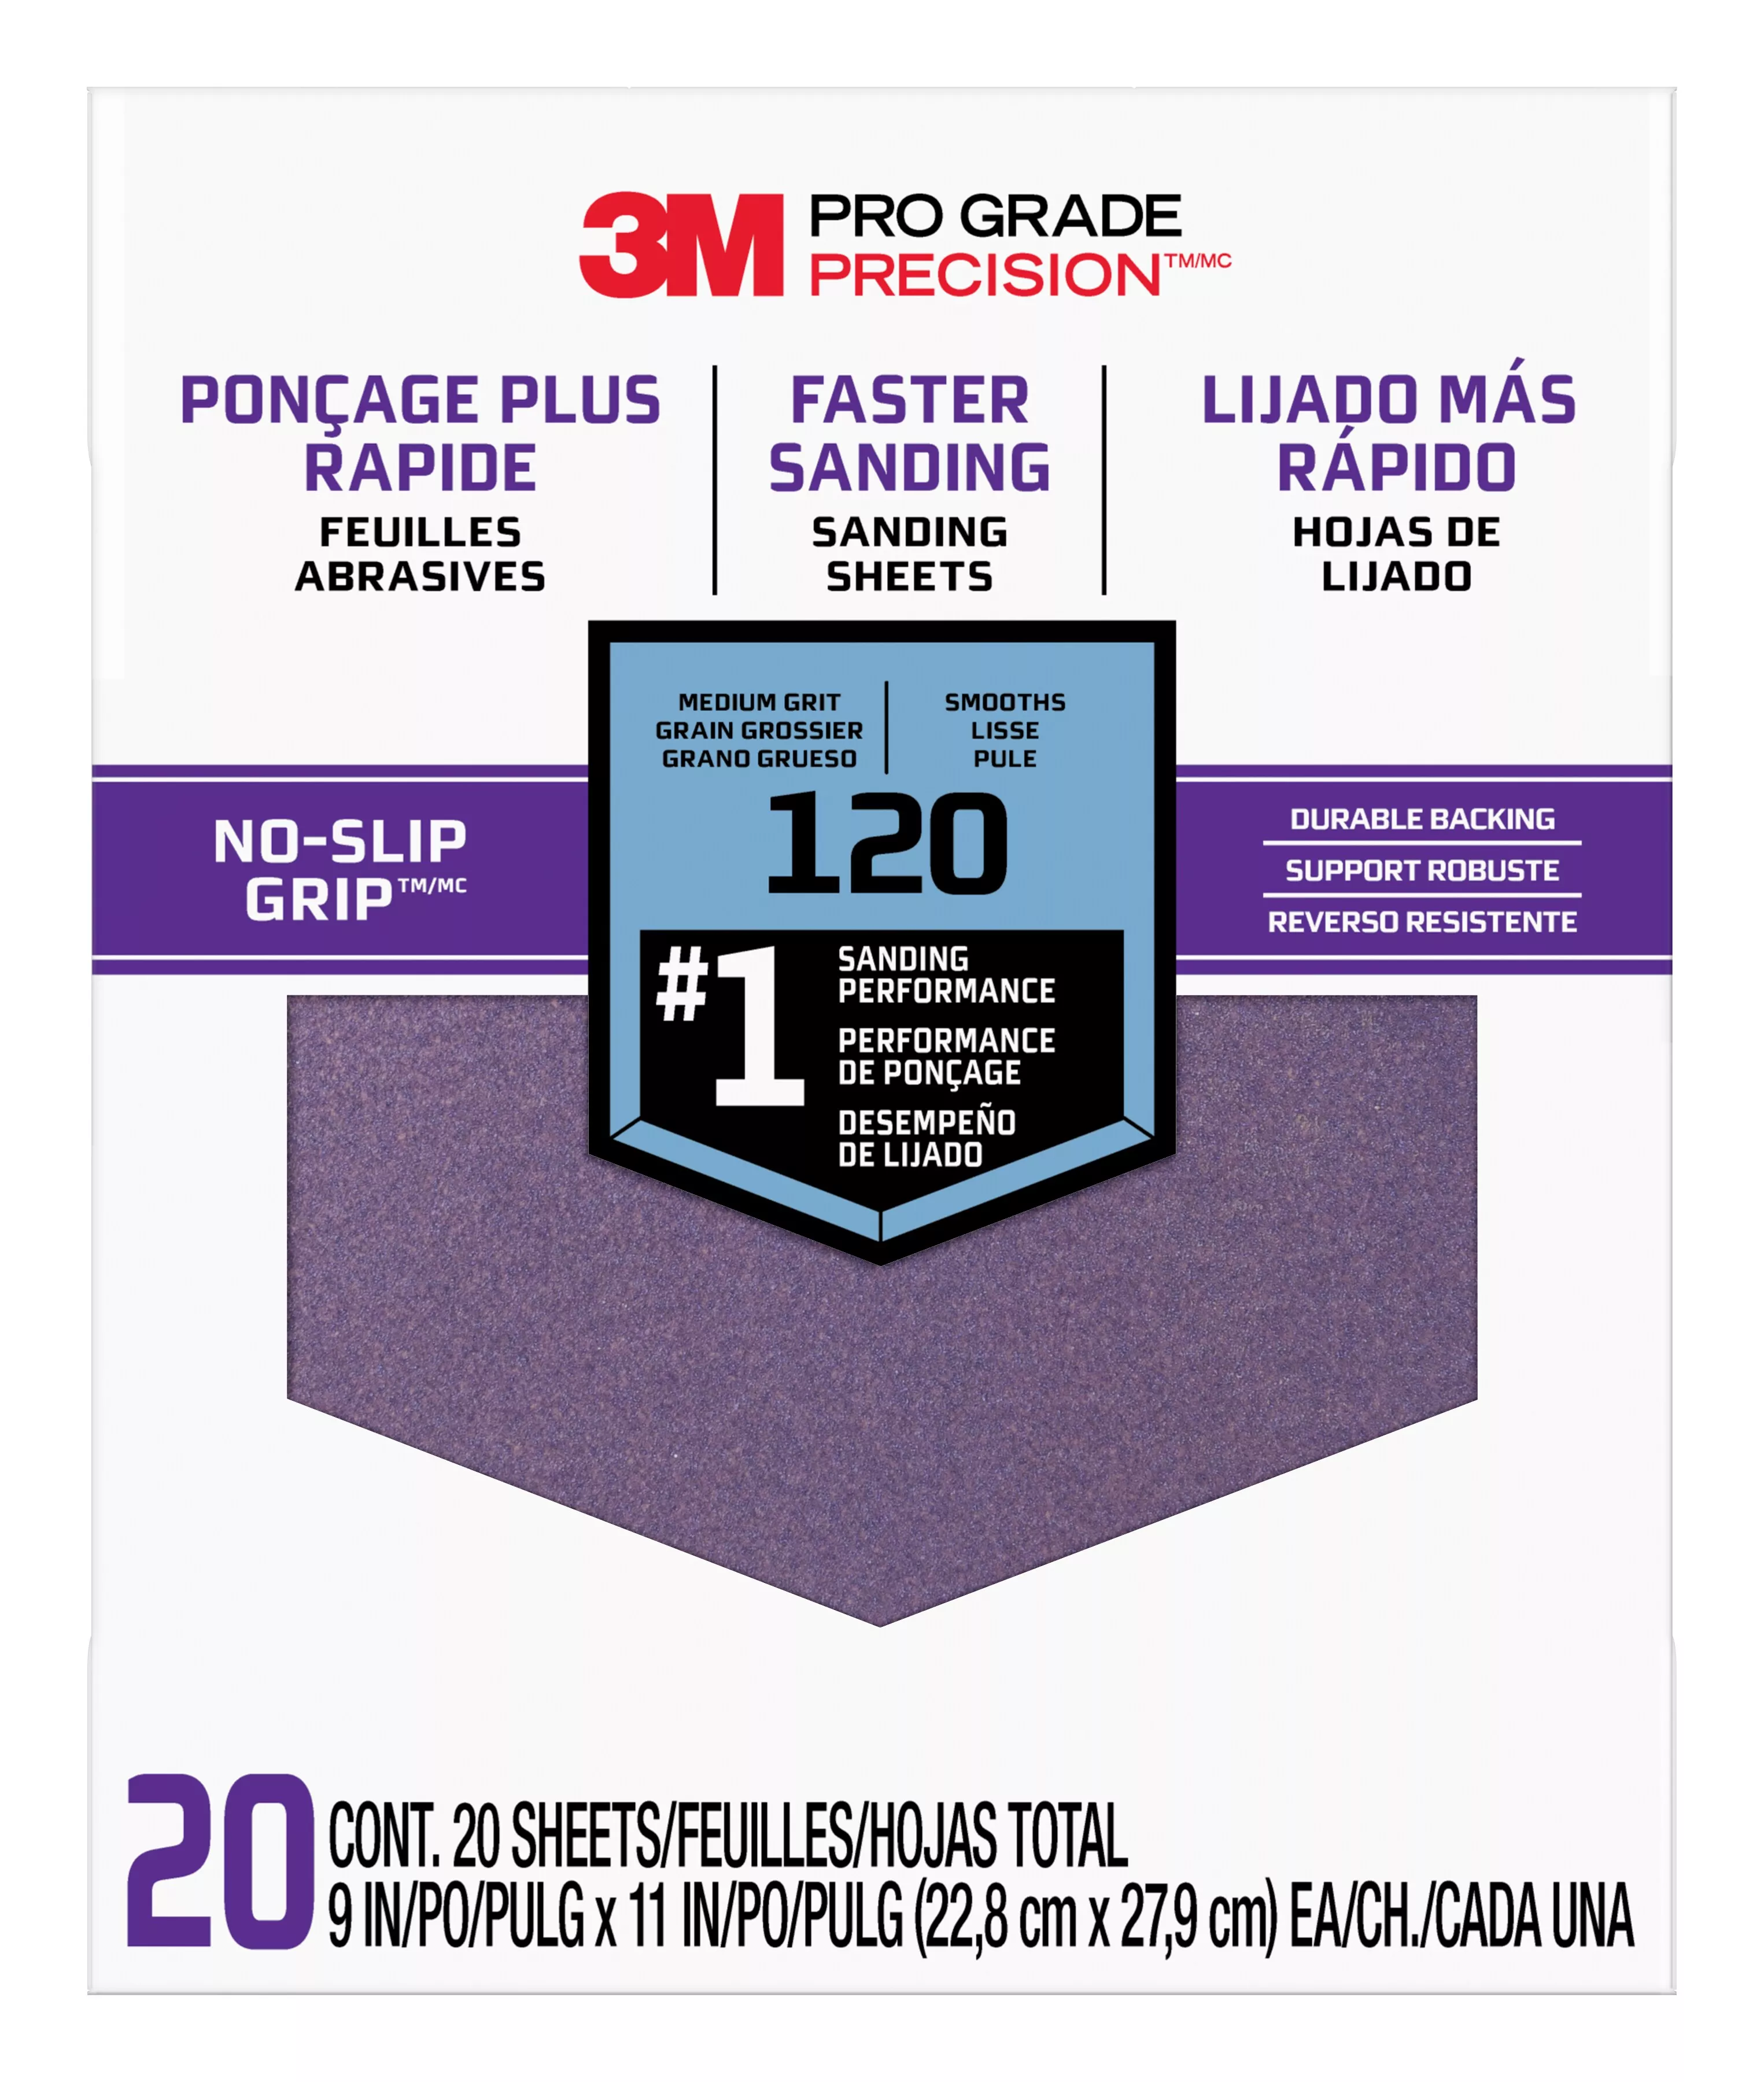 SKU 7010417804 | 3M™ Pro Grade Precision™ Faster Sanding Sanding Sheets 120 grit Medium